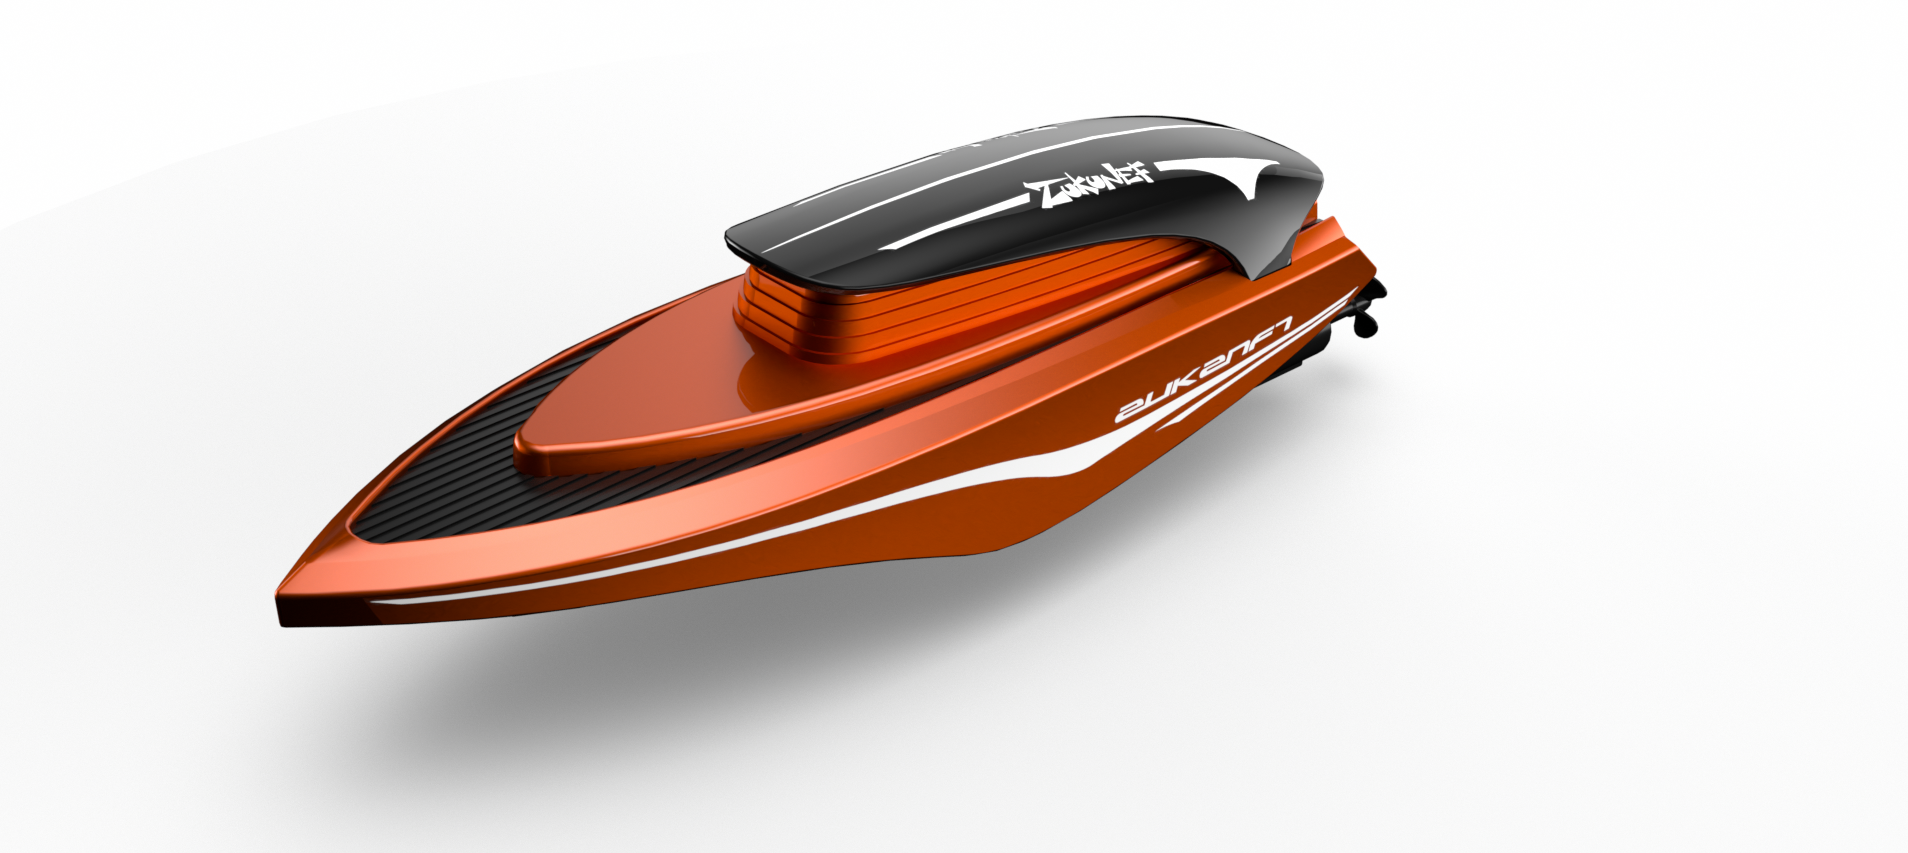 【杭州智信】2.4G电动遥控 迷你 高速快艇舰船模型竞技比赛器材 - 图1